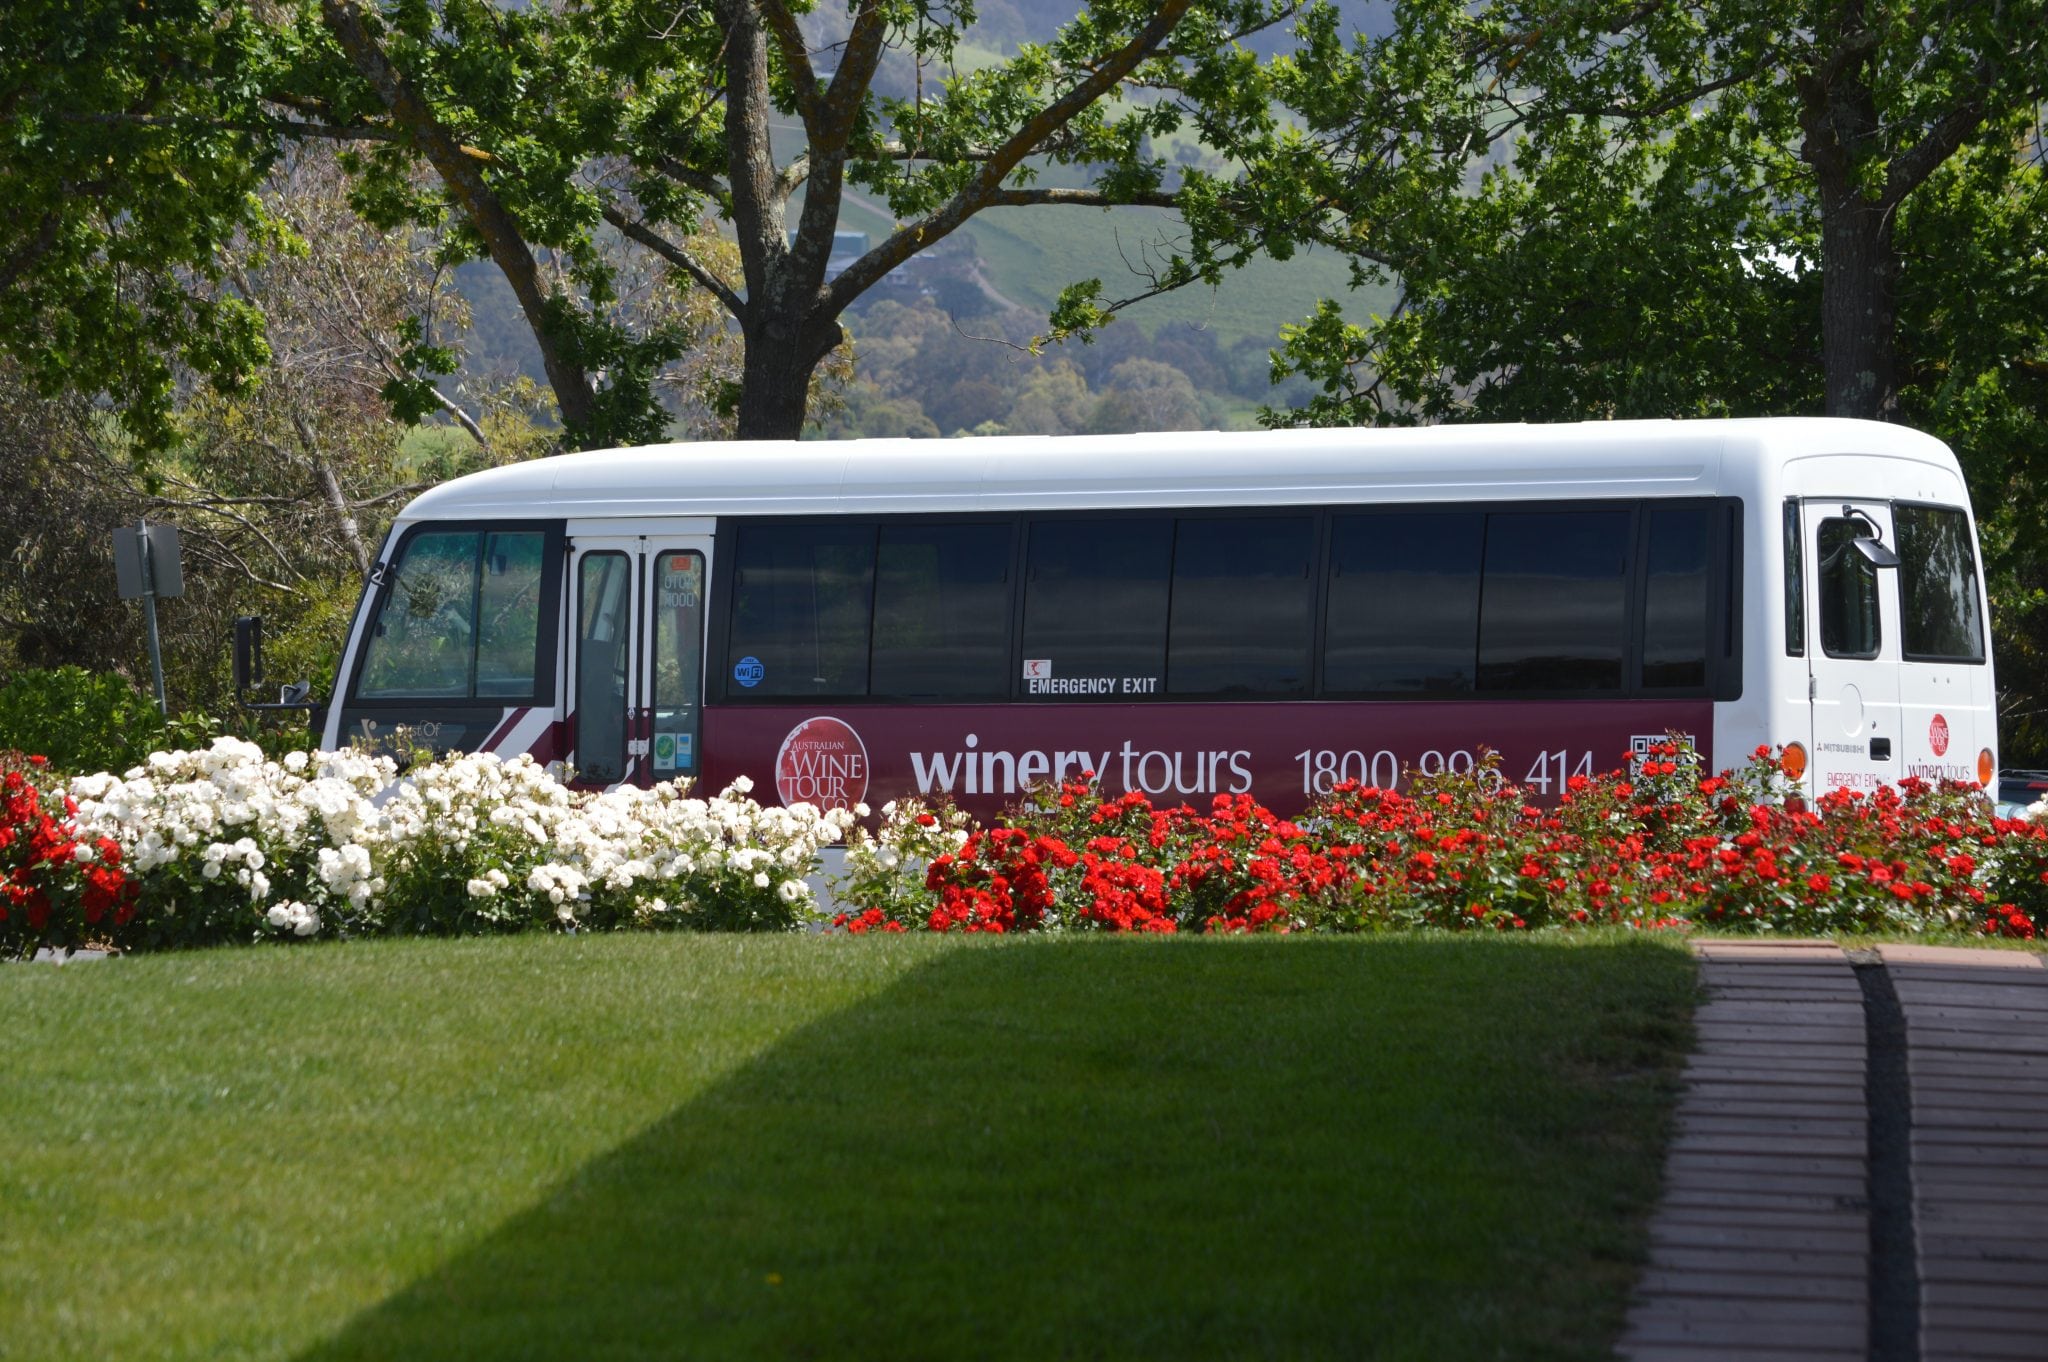 local wine tour bus